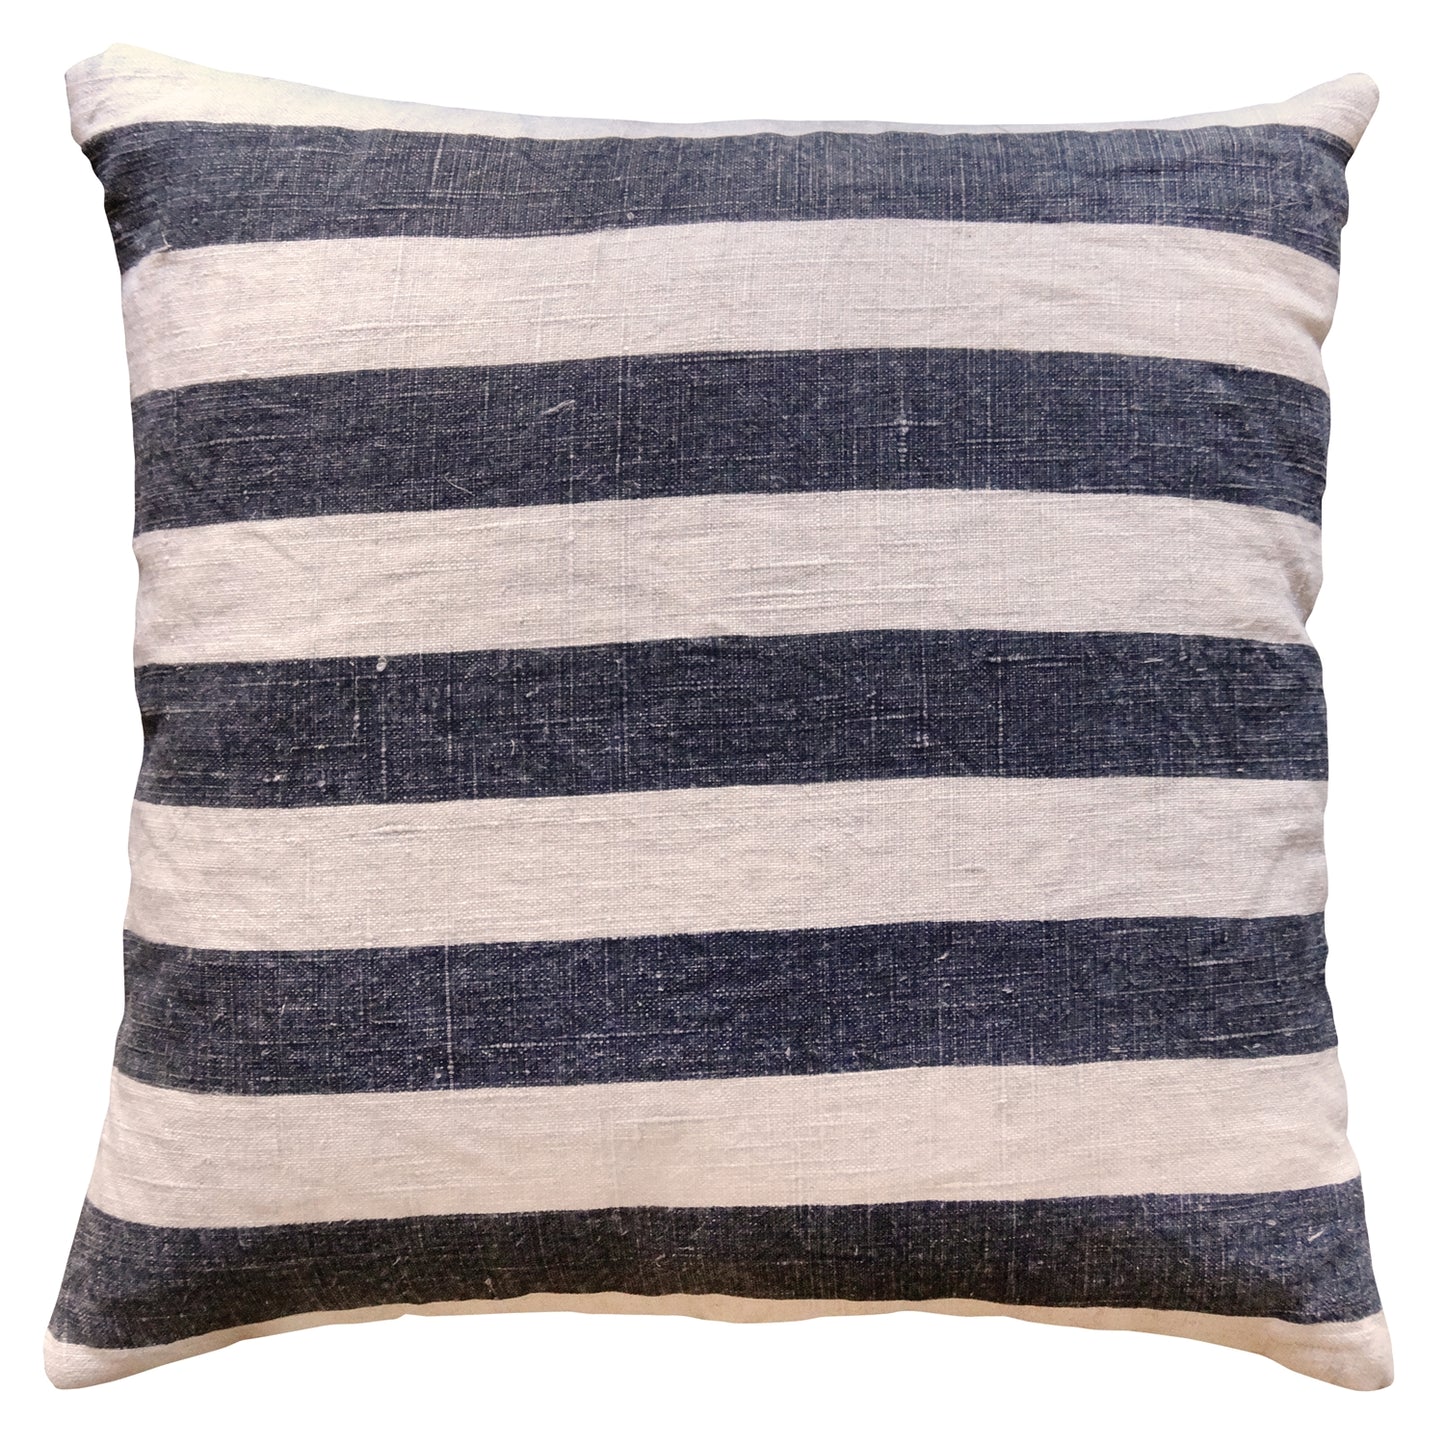 Black Stripes Pillow